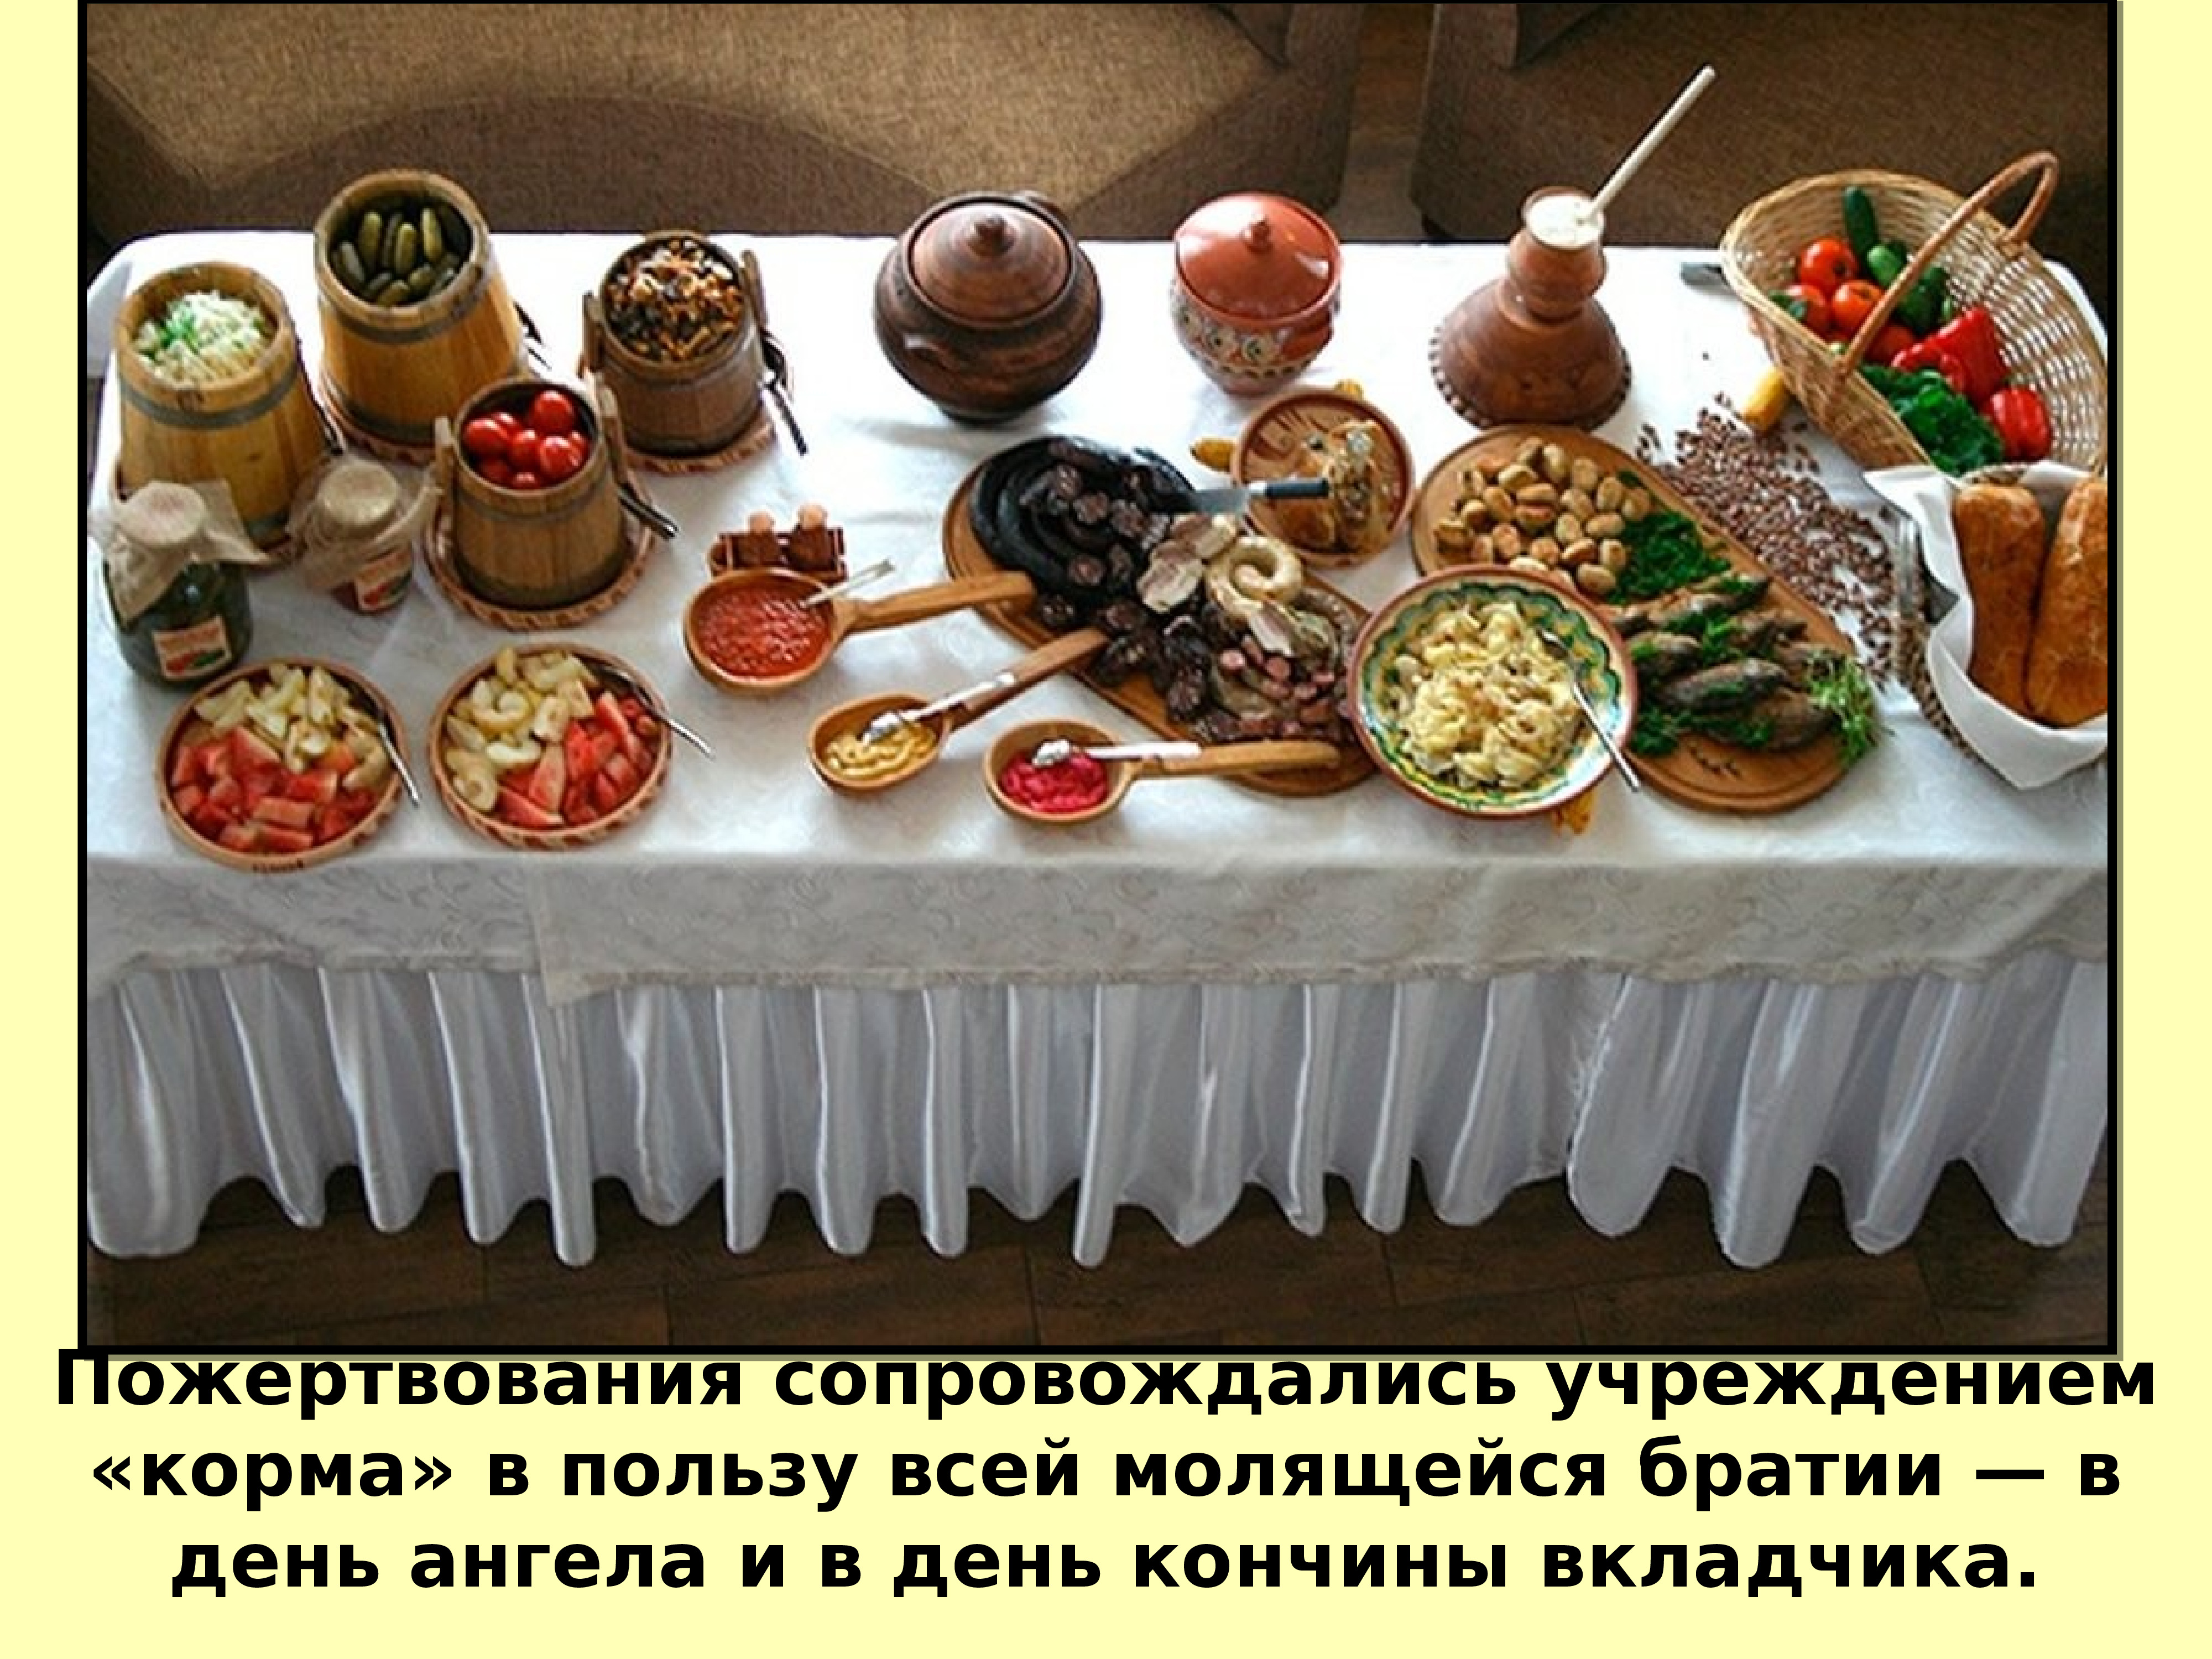 Явства как правильно. Праздничная еда. Накрытый стол с едой. Стол в русском стиле. Накрыть стол в русском стиле.